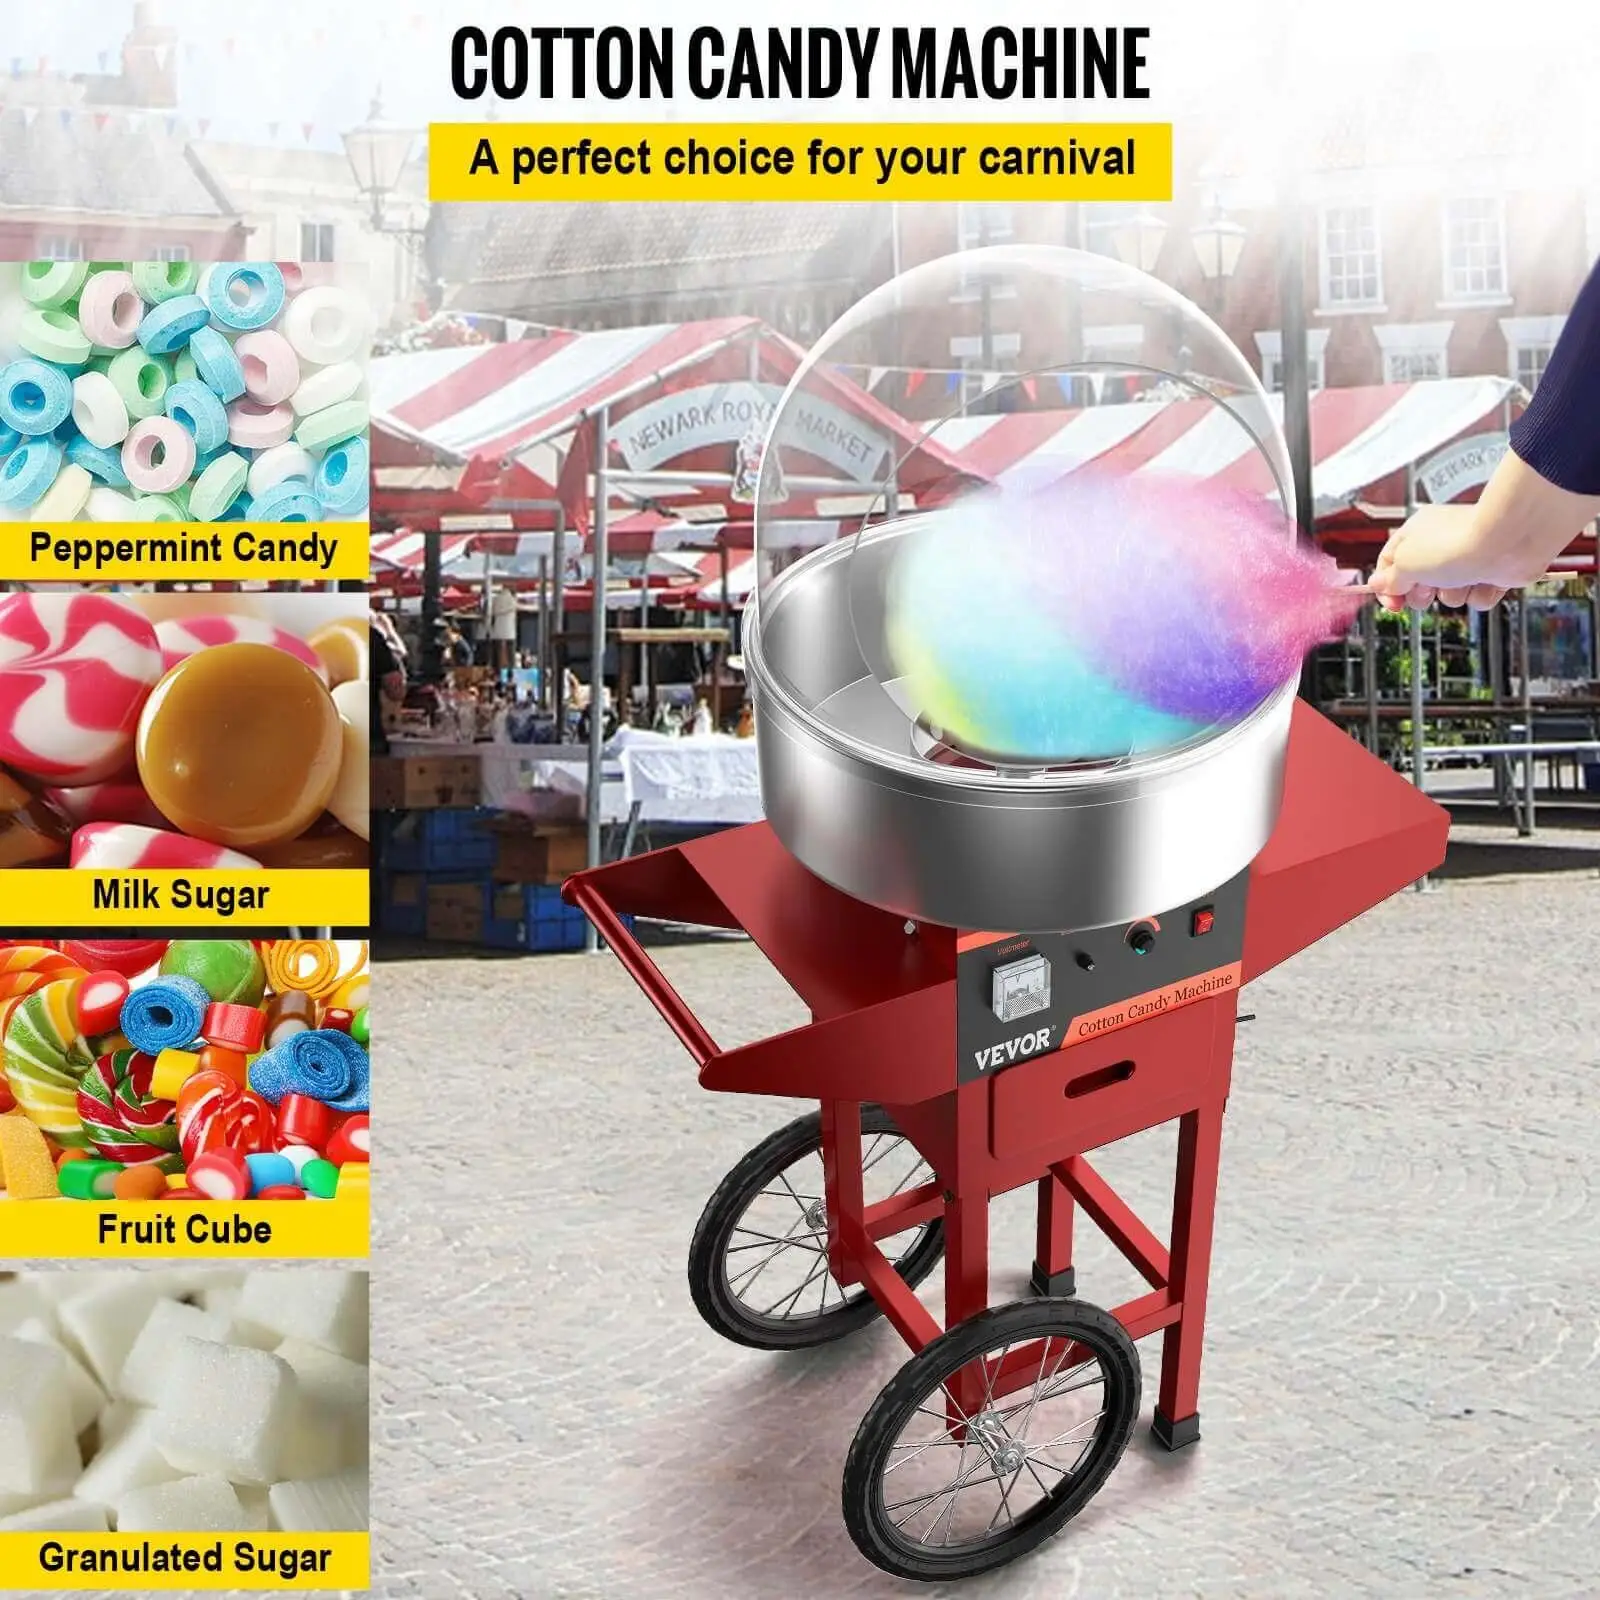 VEVOR cotton candy machine